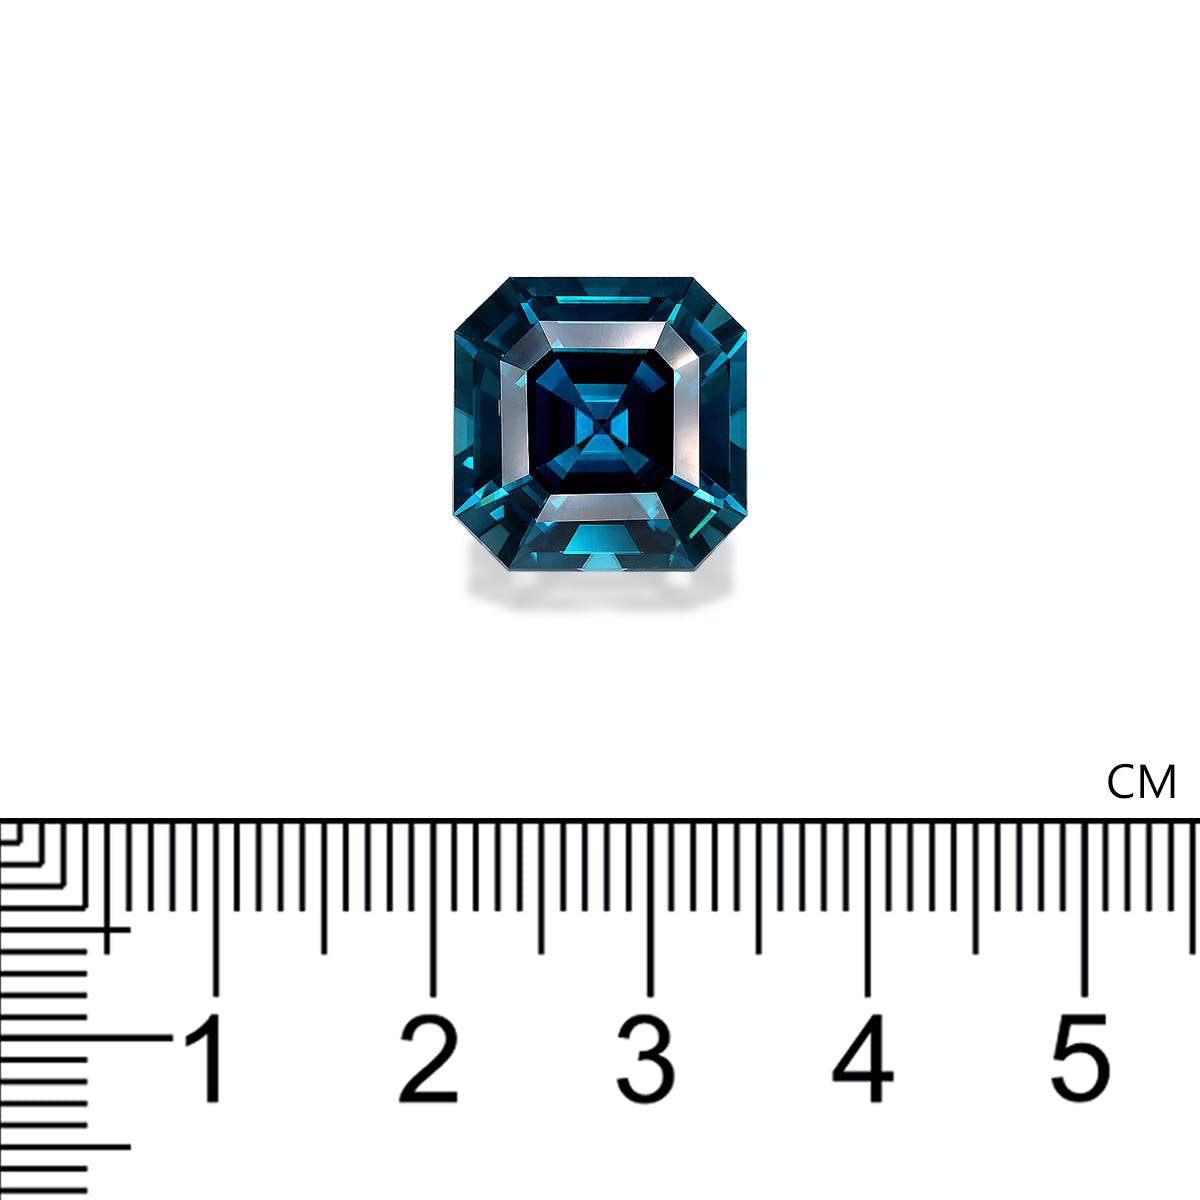 Cobalt Blue Zircon 19.58ct - 13mm (ZI1108)